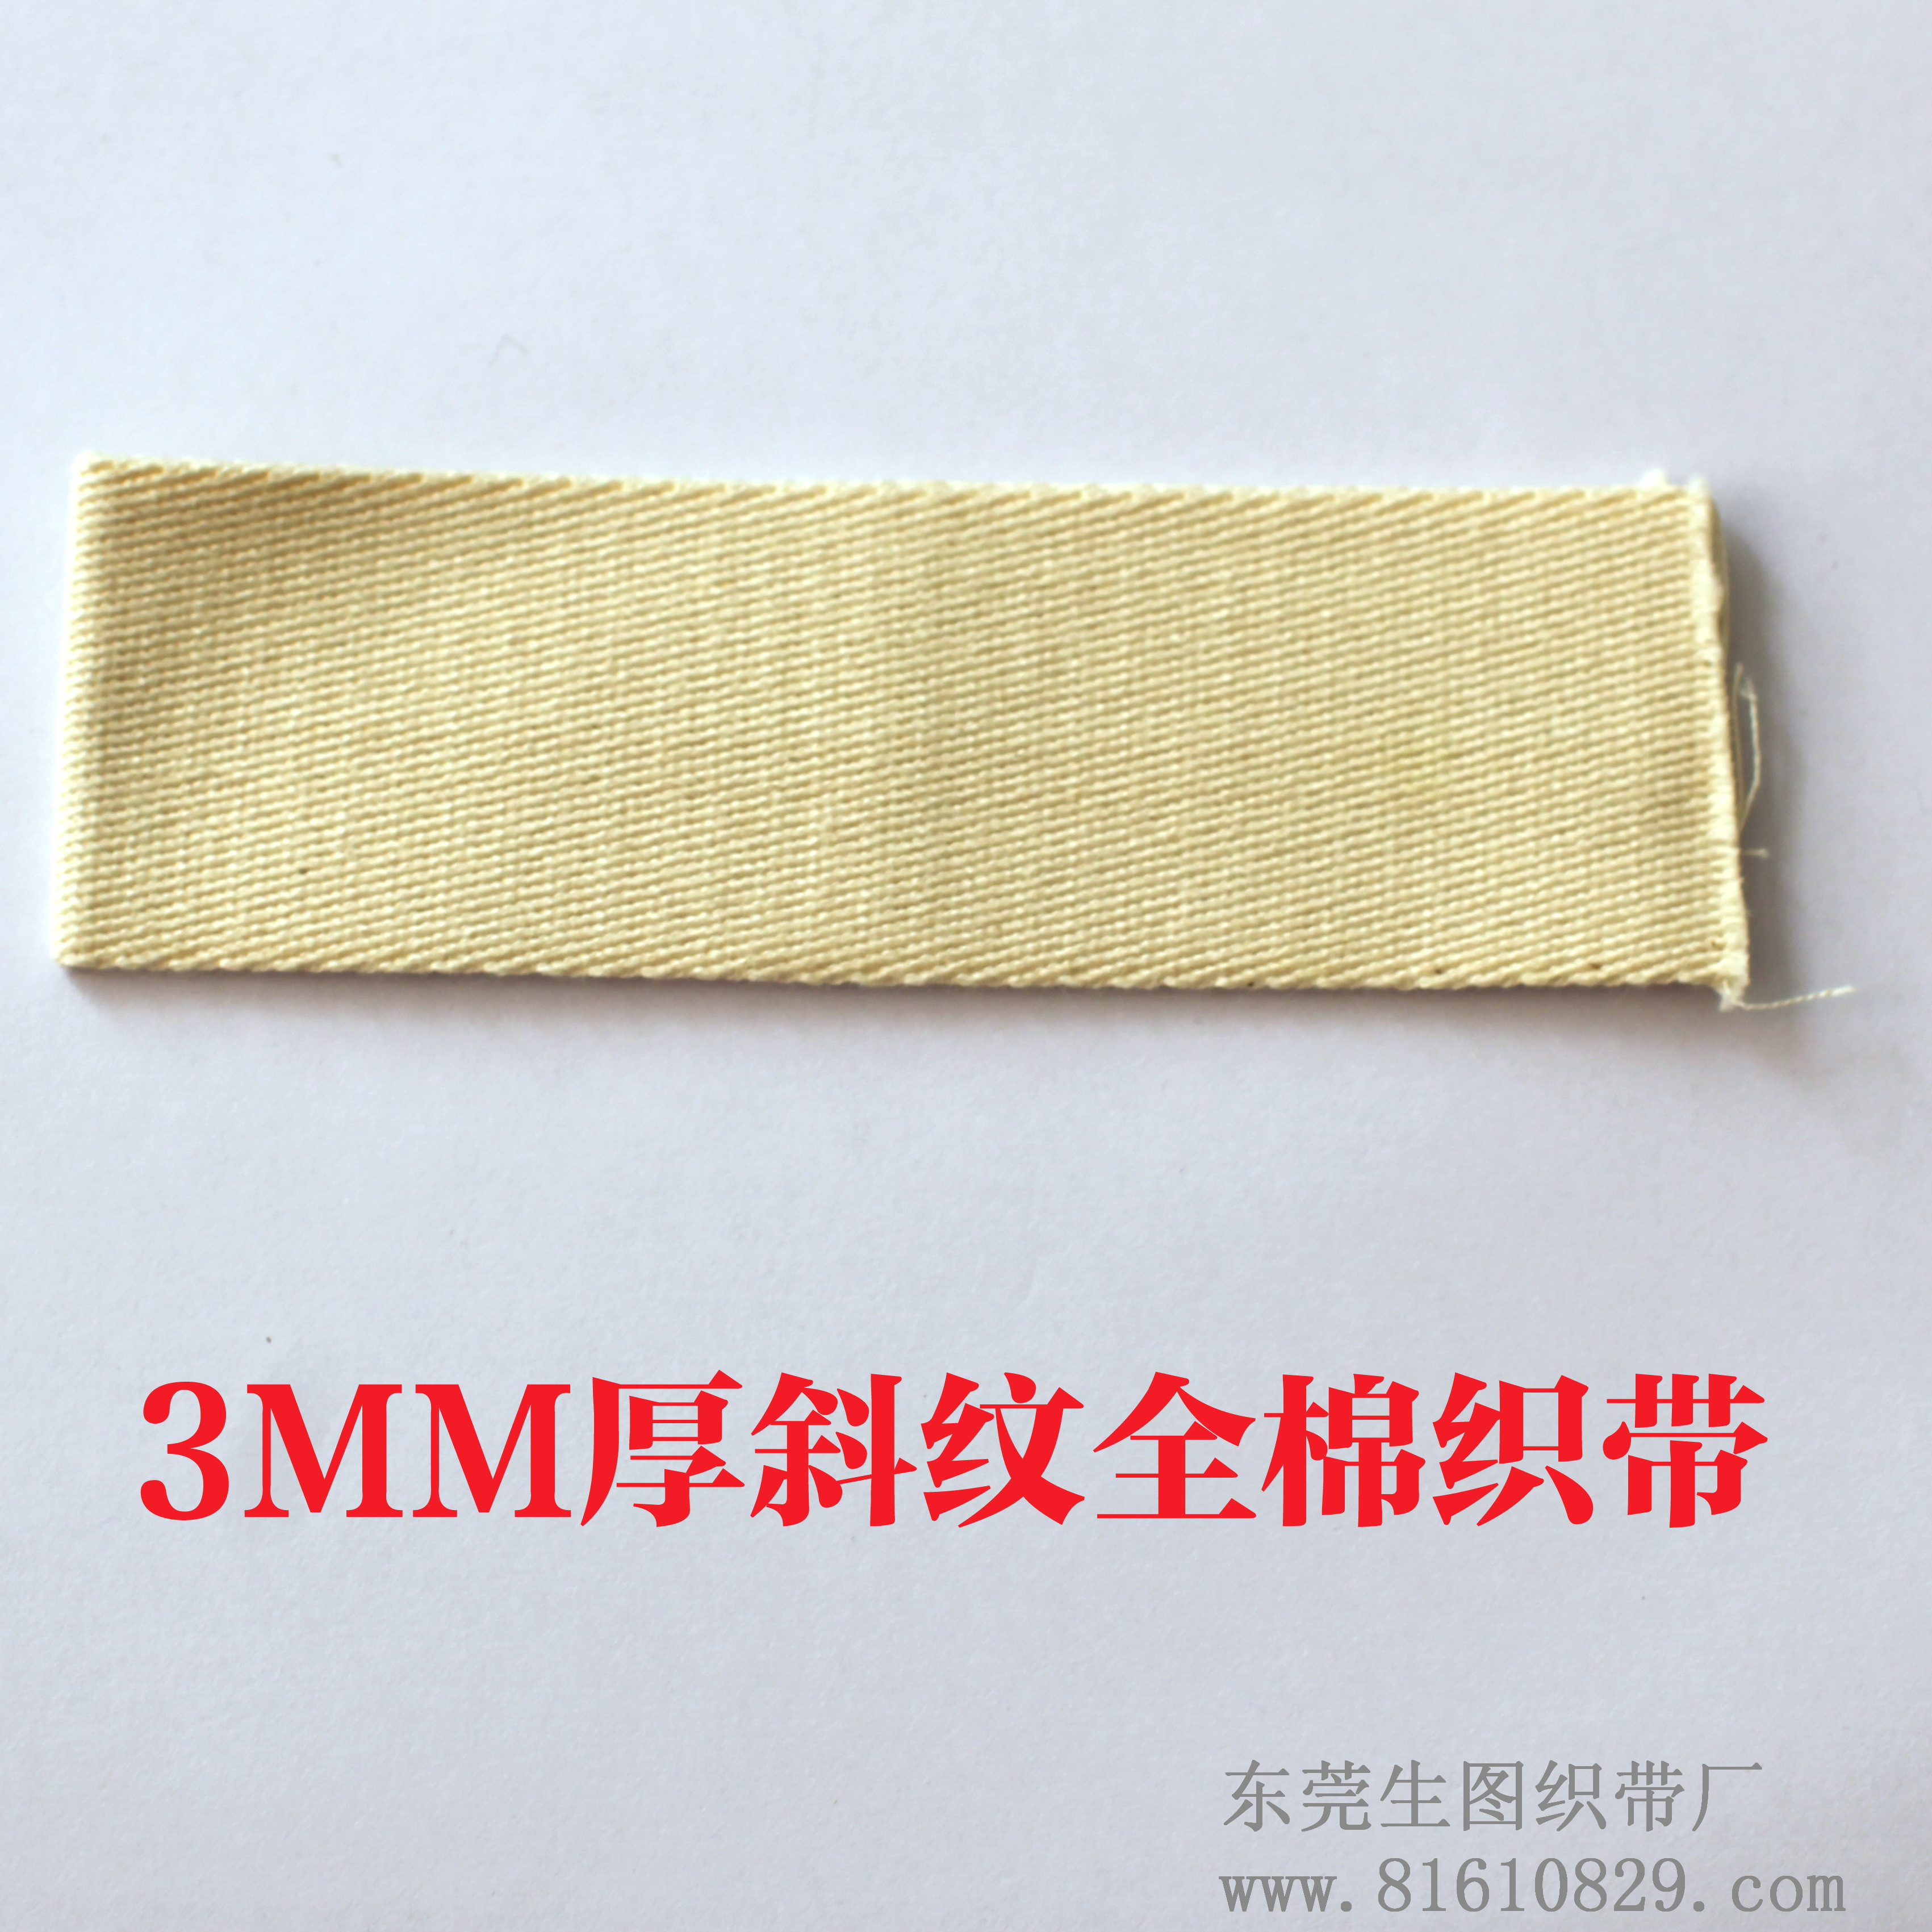 专业订做3MM加厚全棉斜纹织带 商标辅料织带厂家